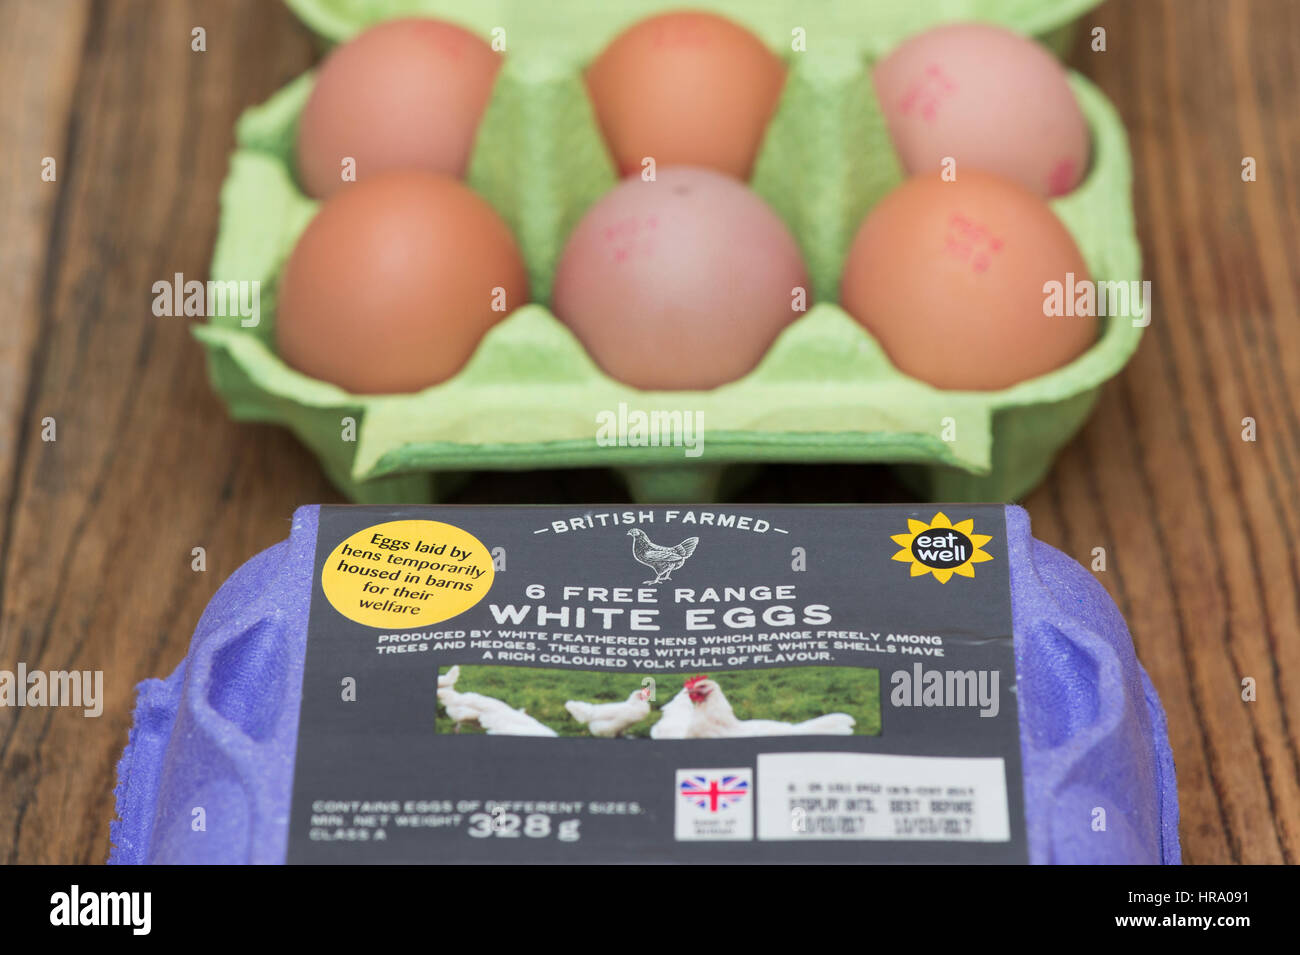 Un adesivo su una scatola di intervallo libero uova spiegando le galline alloggiato in stalle per il loro benessere durante l epidemia di influenza aviaria nel Regno Unito Foto Stock